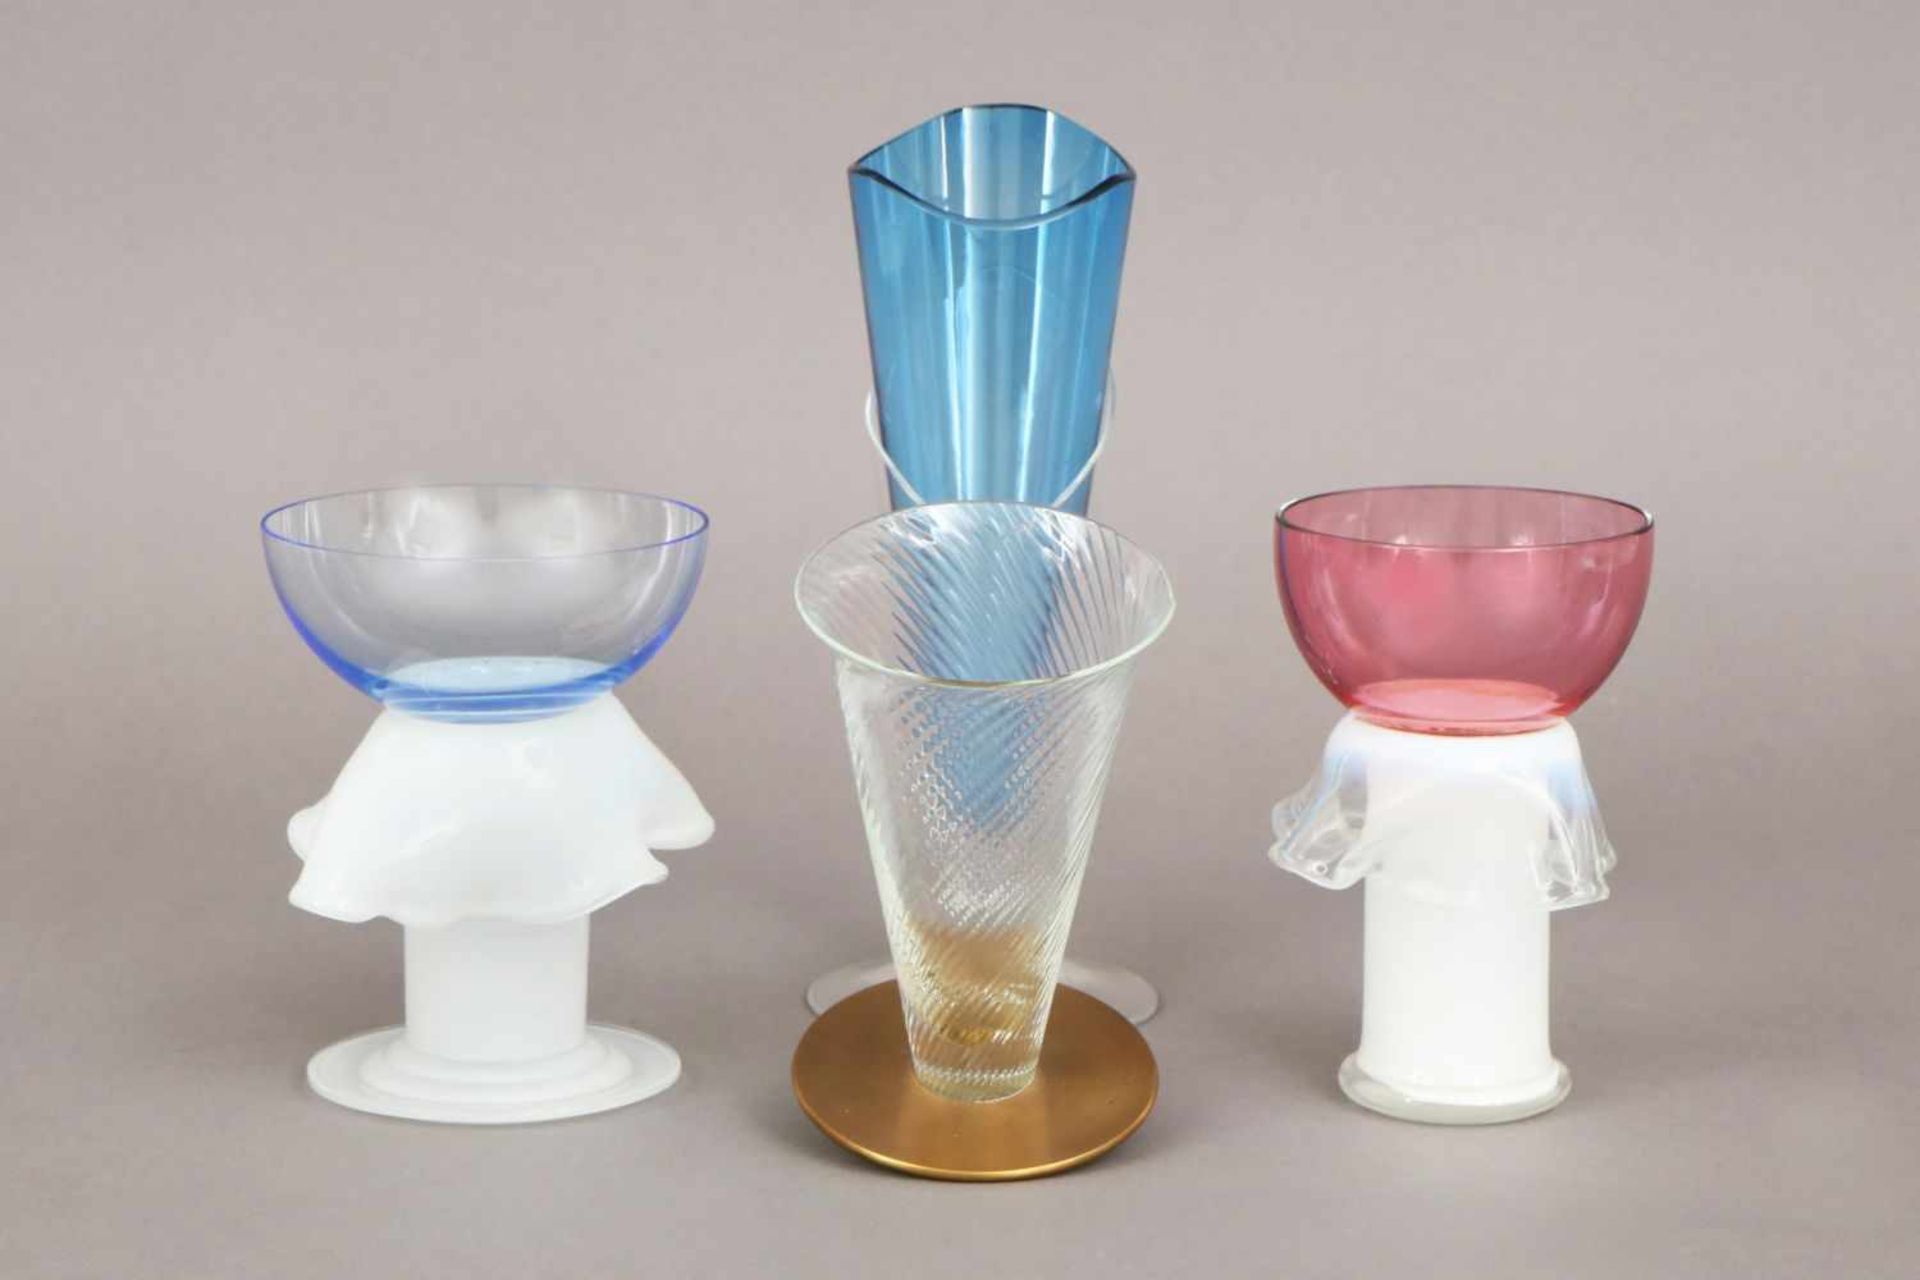 BOREK SIPEK (1949-2016)4 Gläser, diverse Formen, Größen und Farben, 2x Kelchform mit opalinem